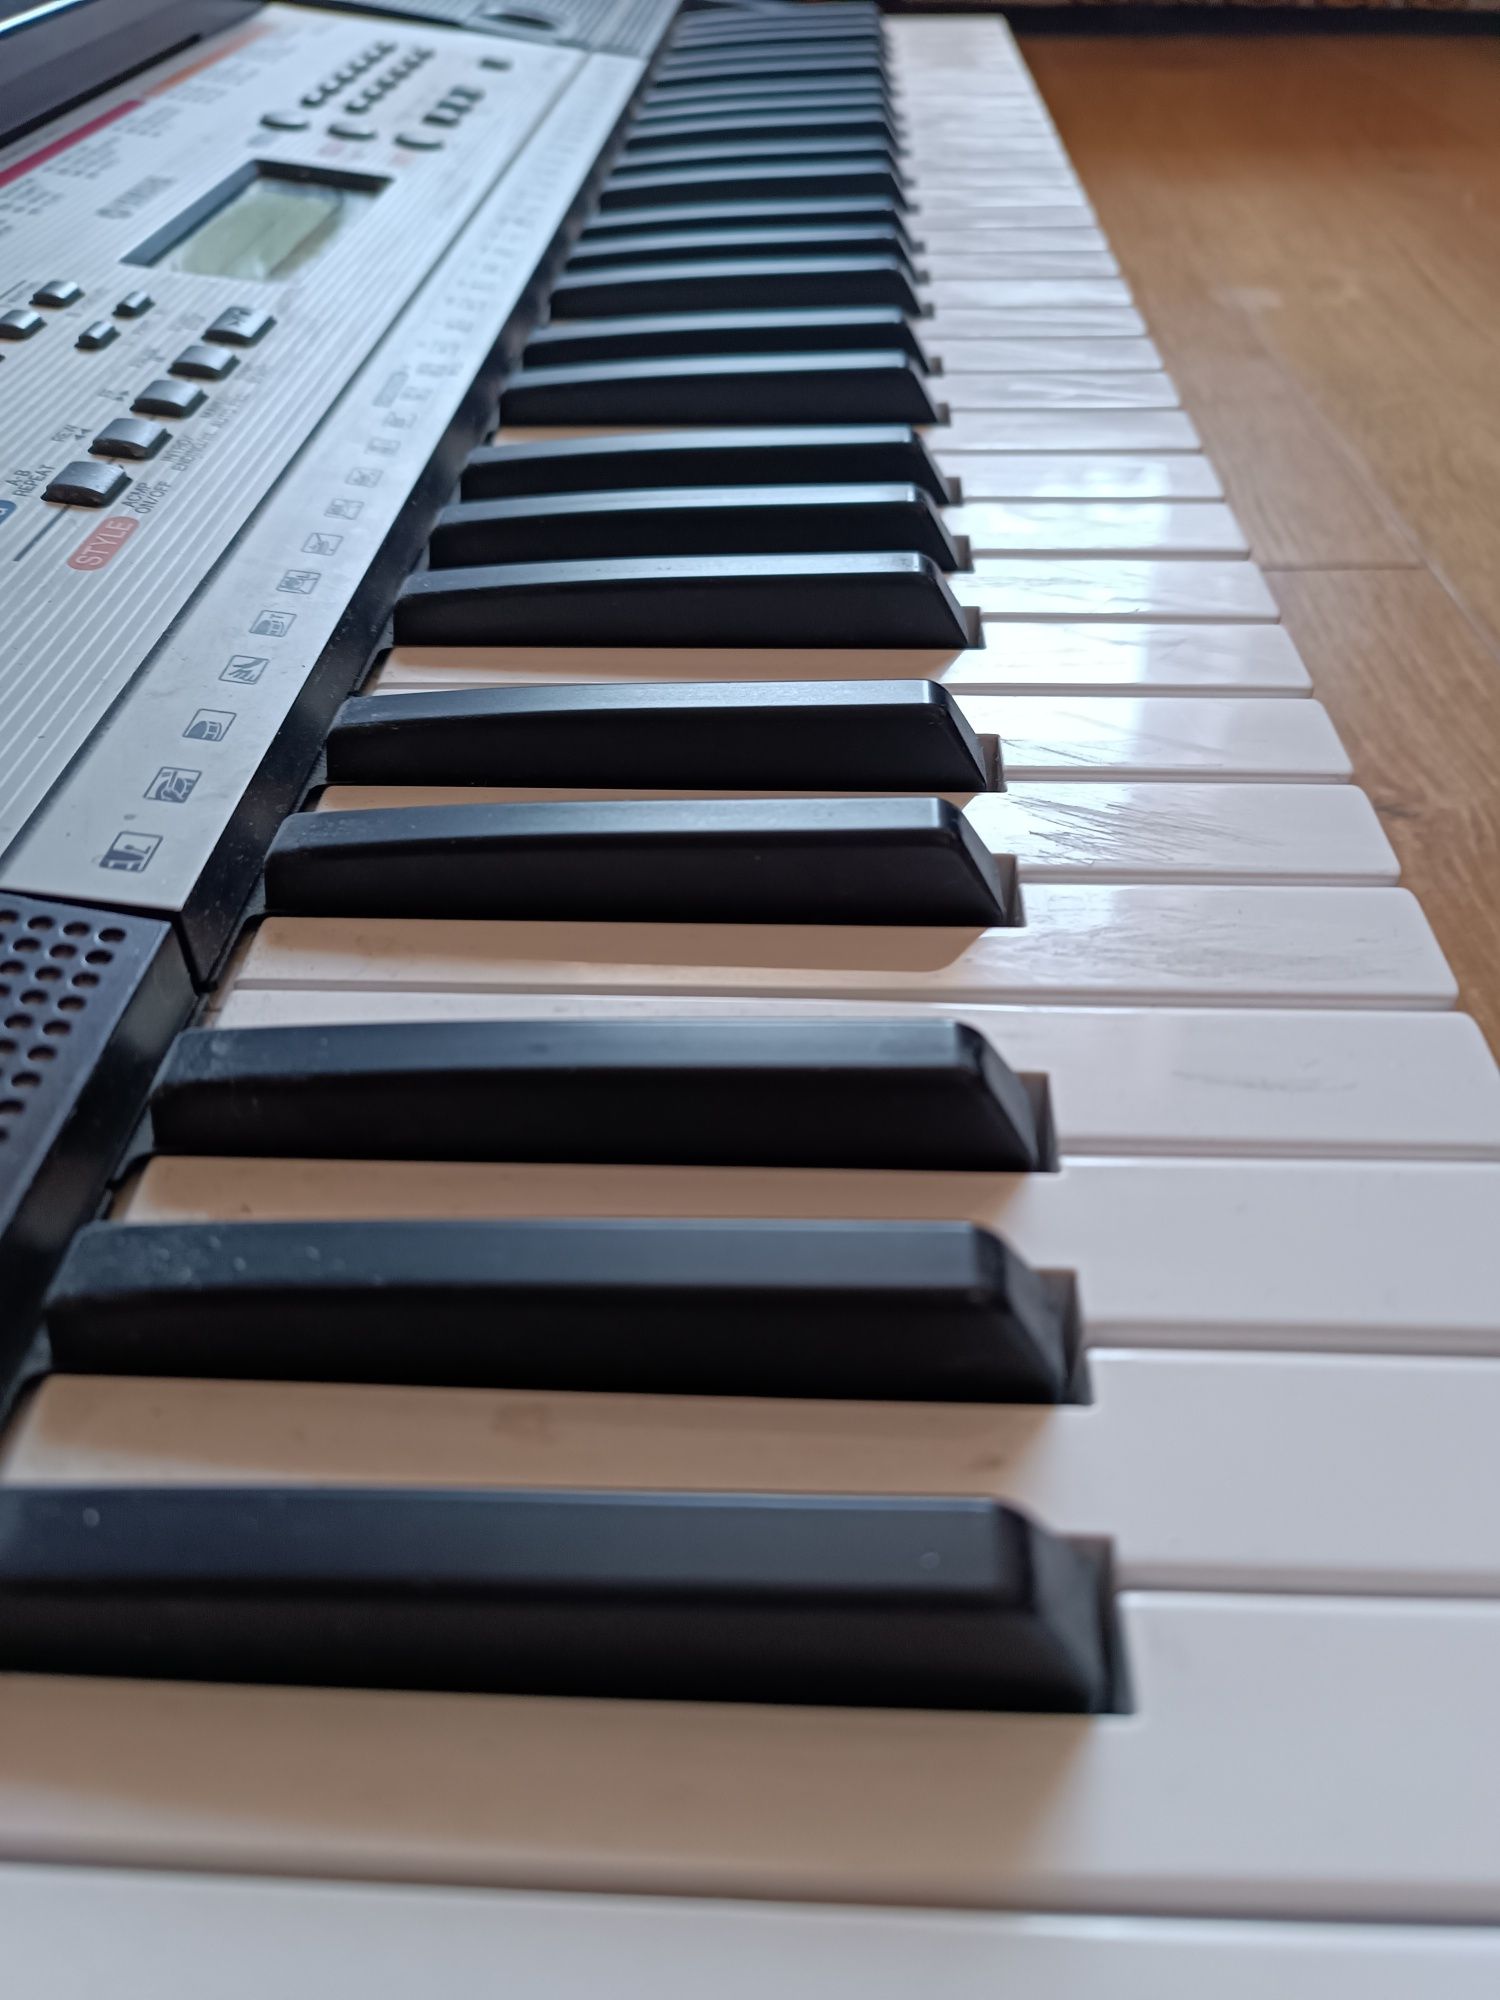 Keyboard Yamaha YPT 260